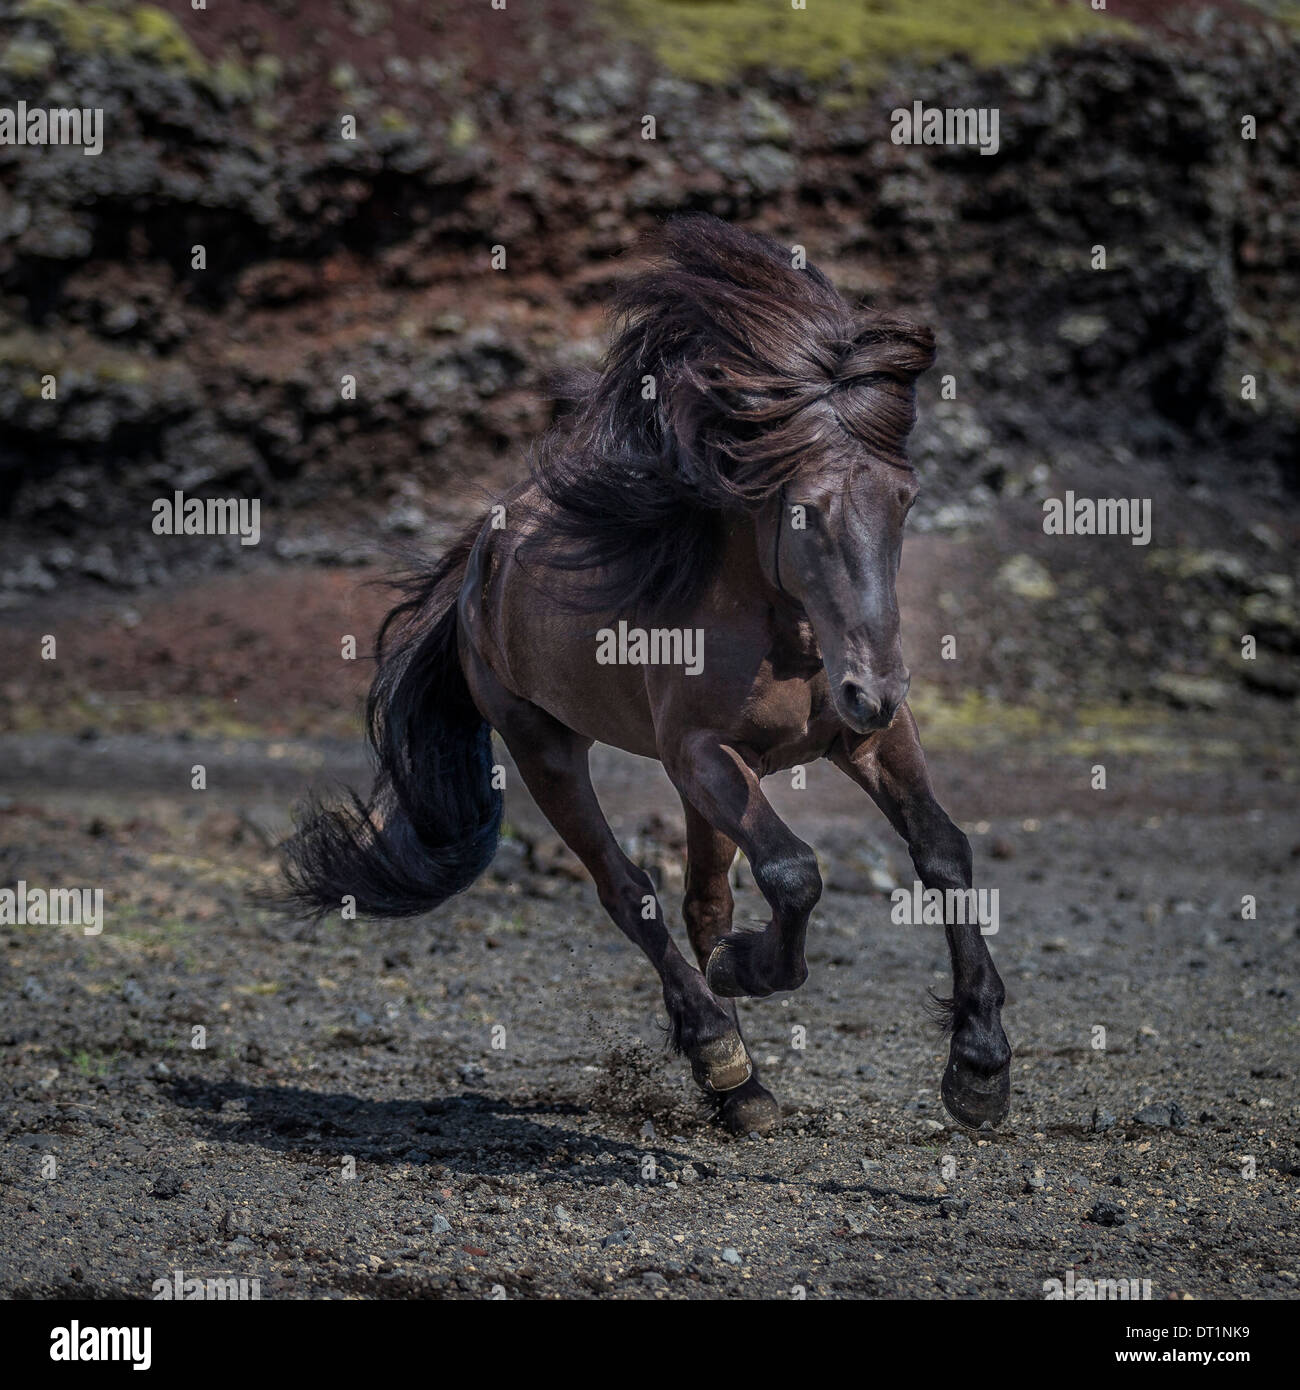 Black Icelandic horse running, Iceland Stock Photo